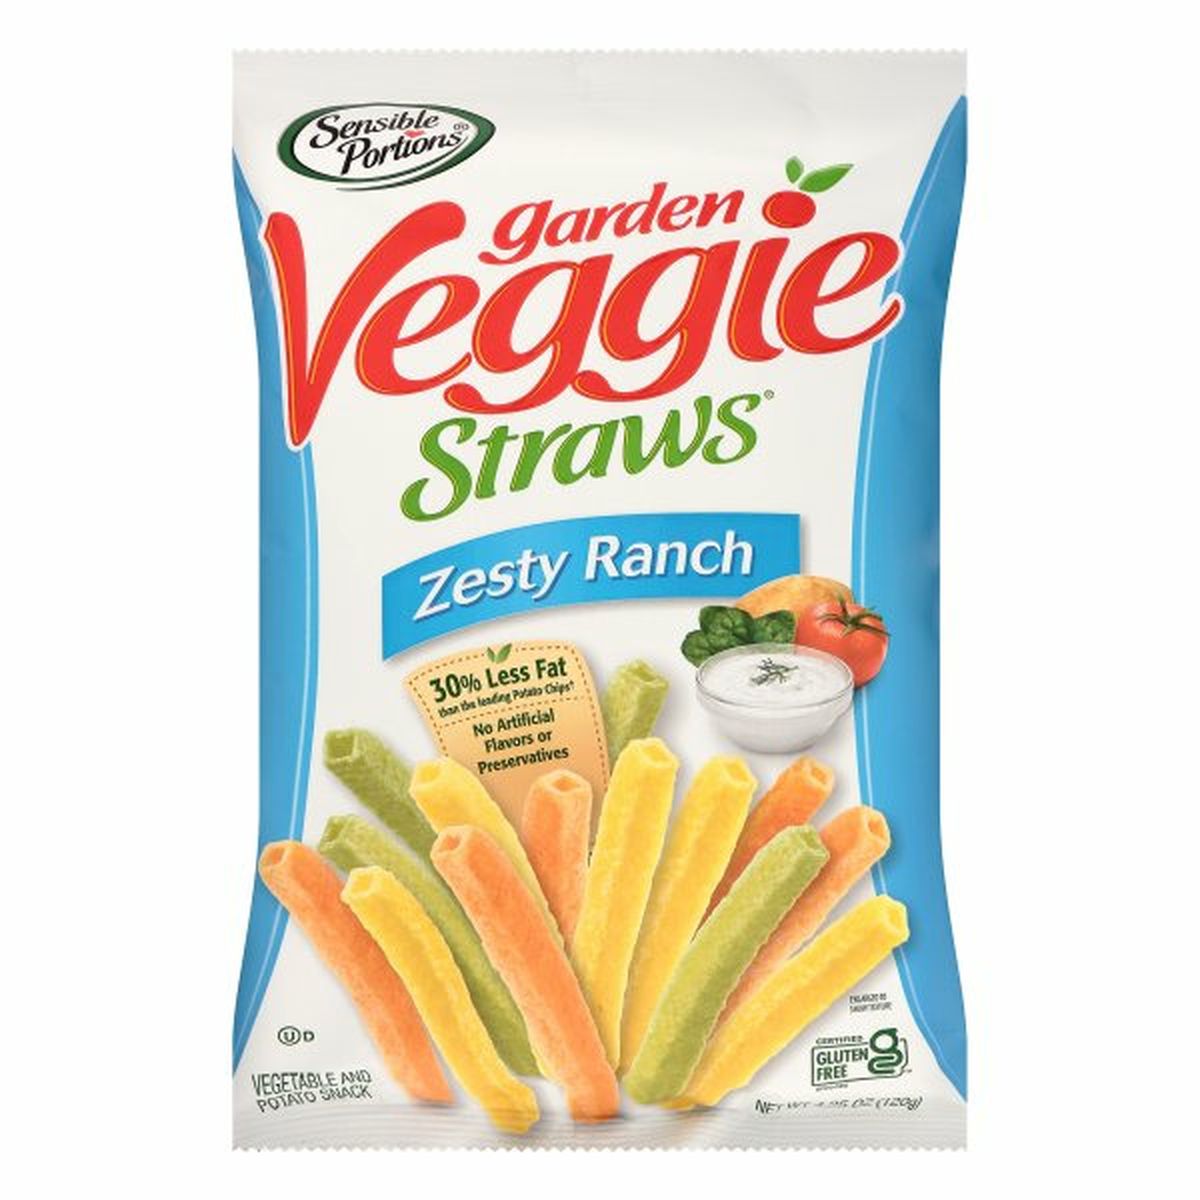 Calories in Sensible Portions Veggie Straws, Garden, Zesty Ranch